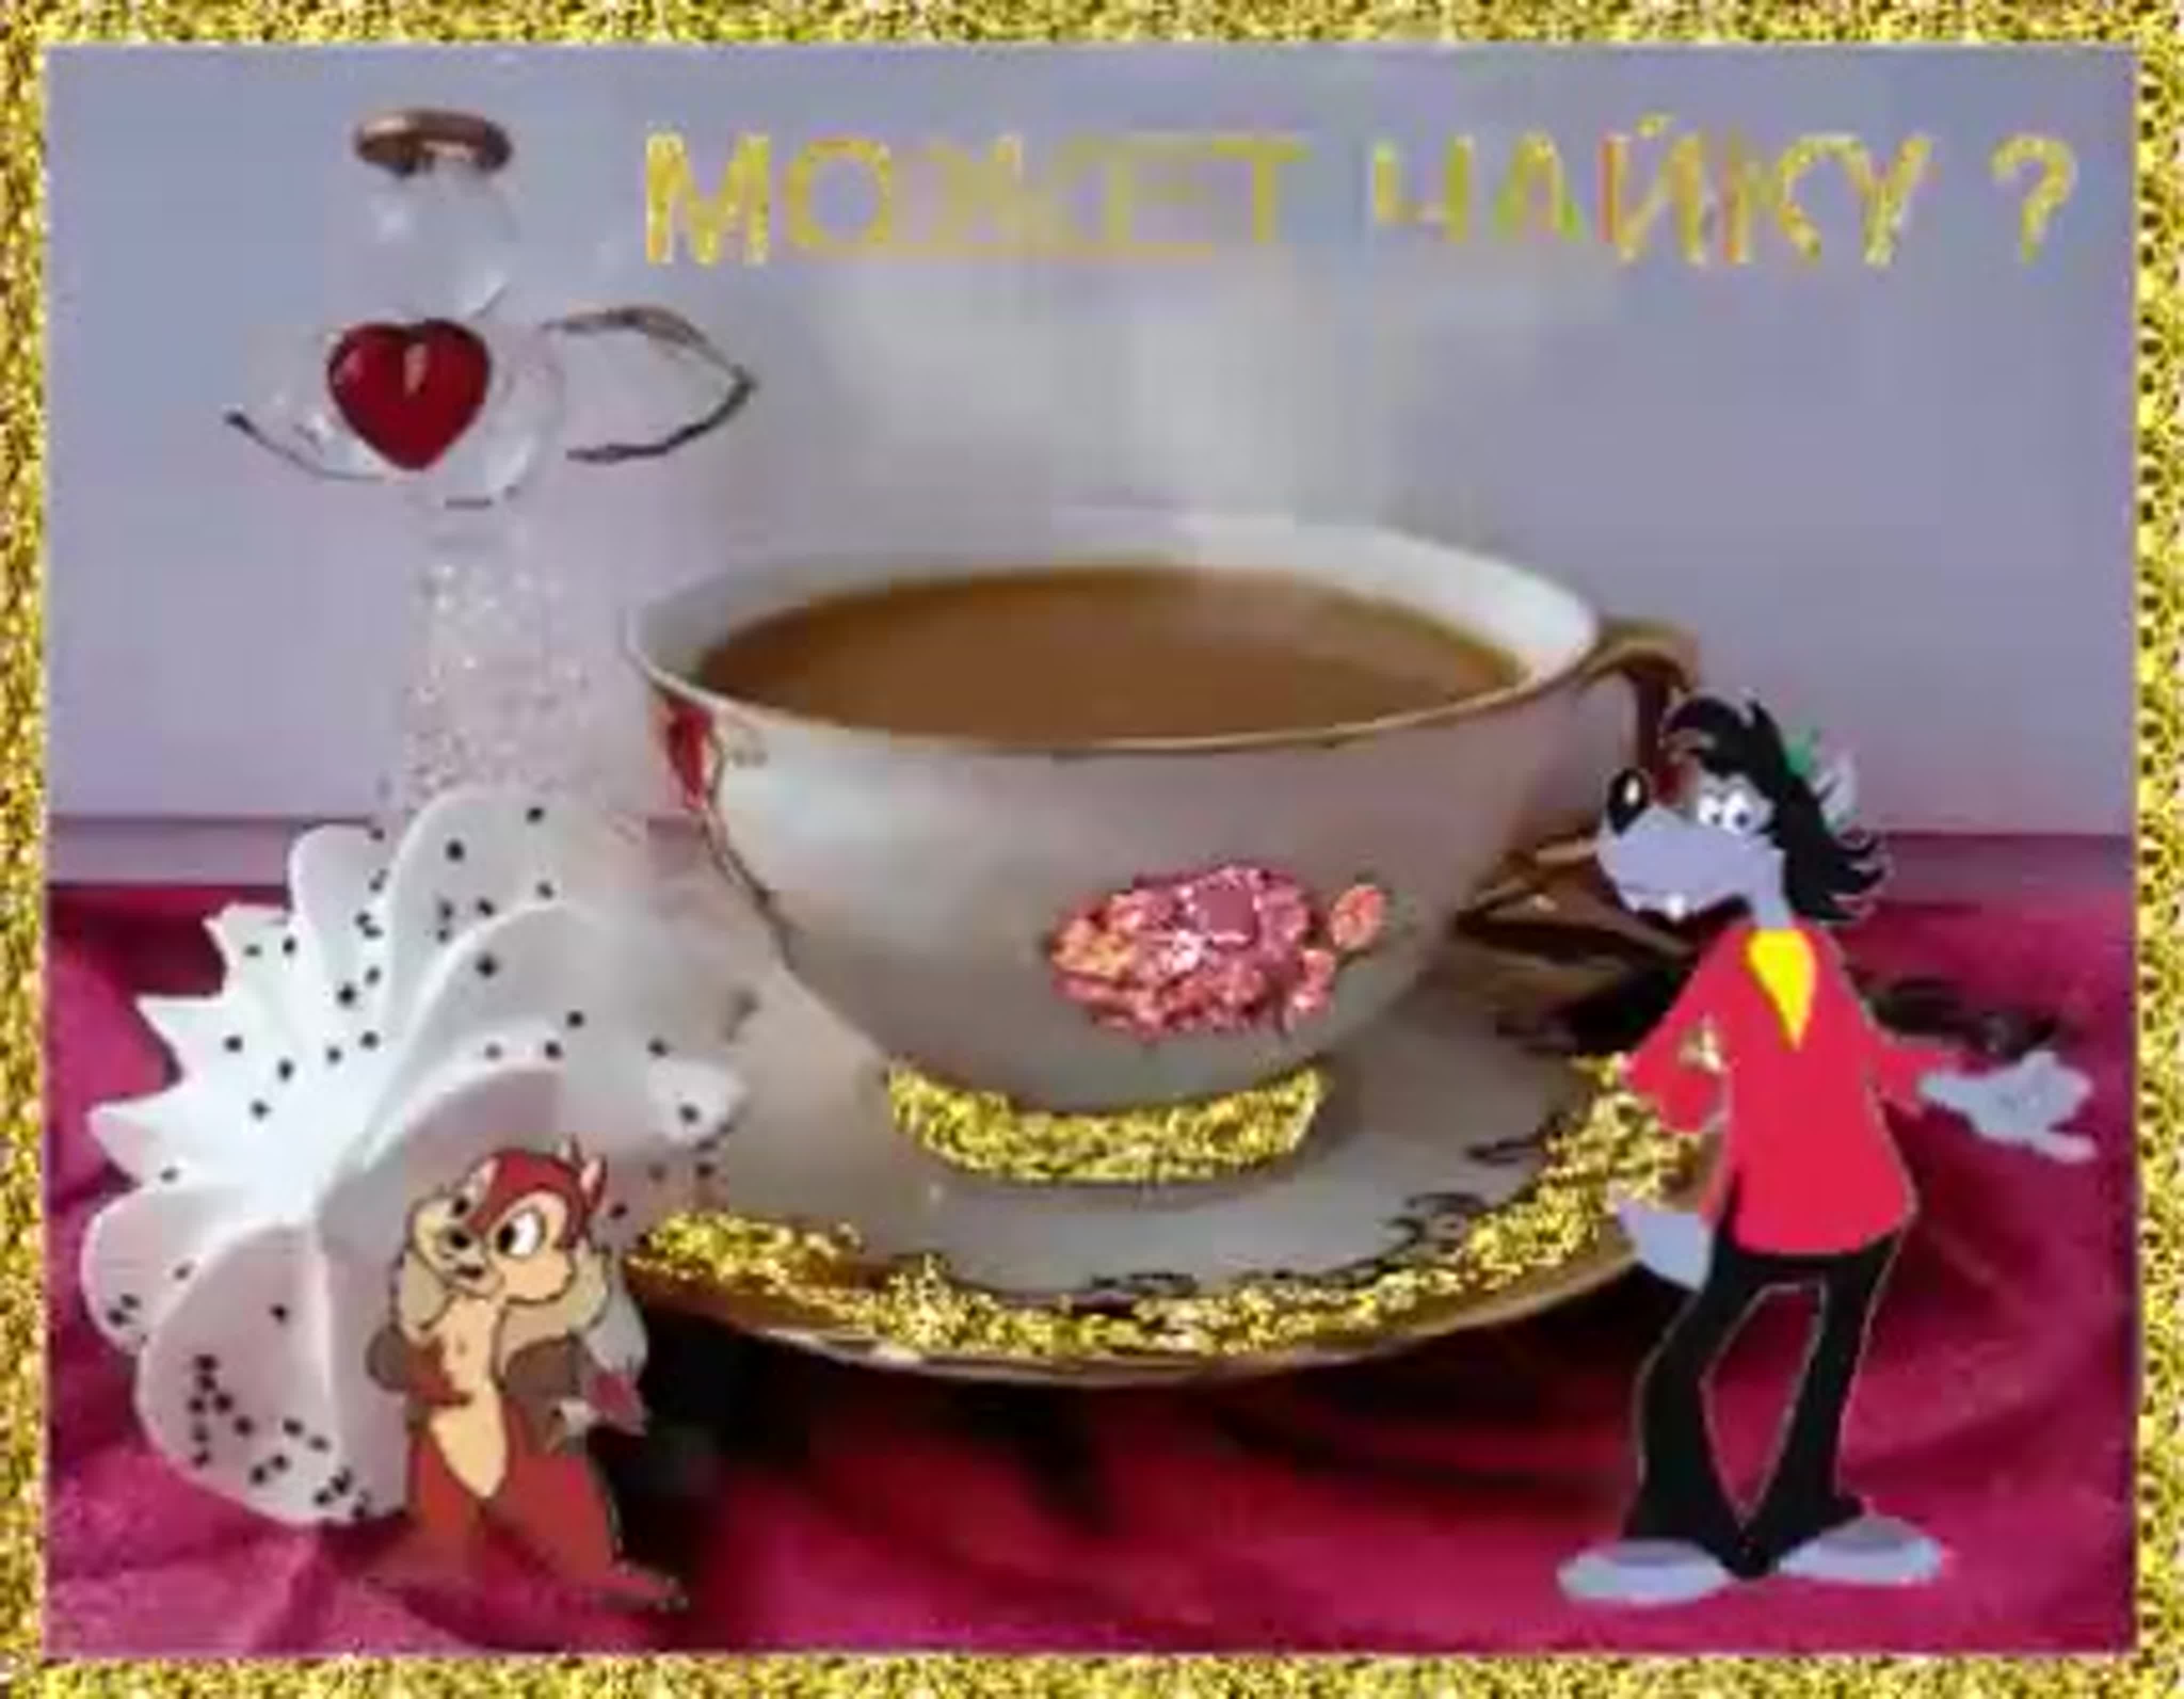 Заходи чай попьем. Чай добрый день. Гифки с добрым утром прикольные. Чашечка чая для настроения. Утреннего чаепития с пожеланиями.